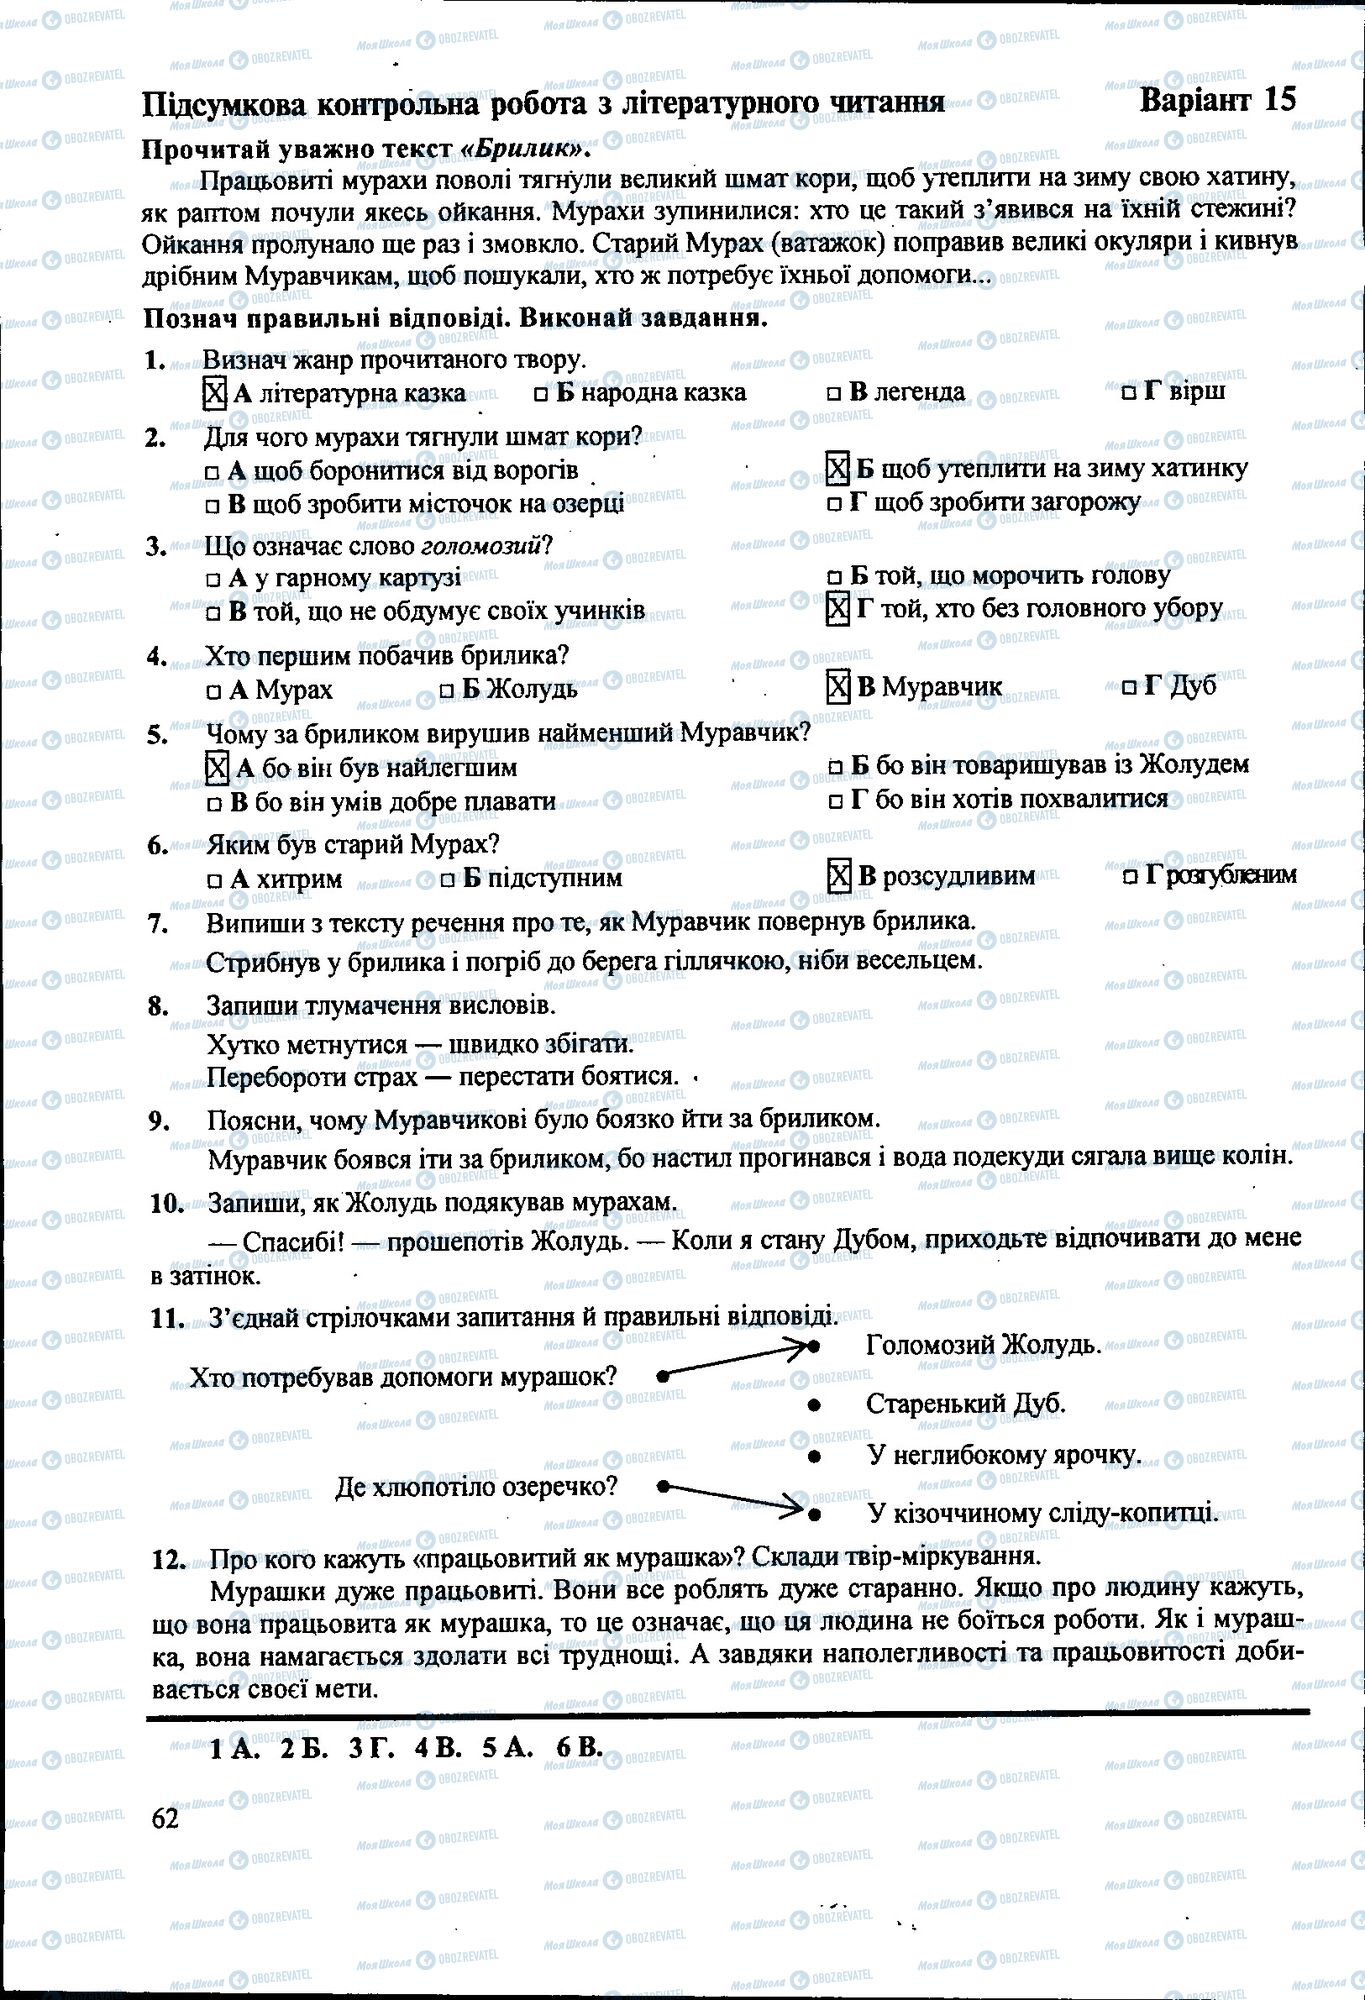 ДПА Укр мова 4 класс страница 062